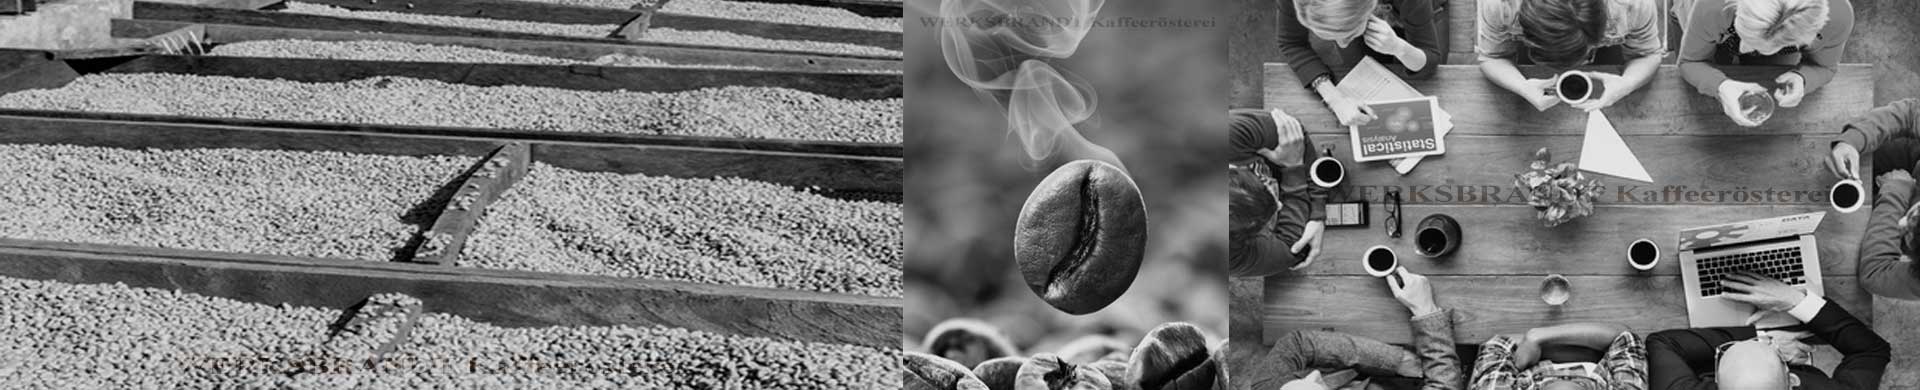 WERKSBRANDT Kaffeerösterei Impressionen Rohkaffee Kaffeebohne Besprechung mit Kaffee